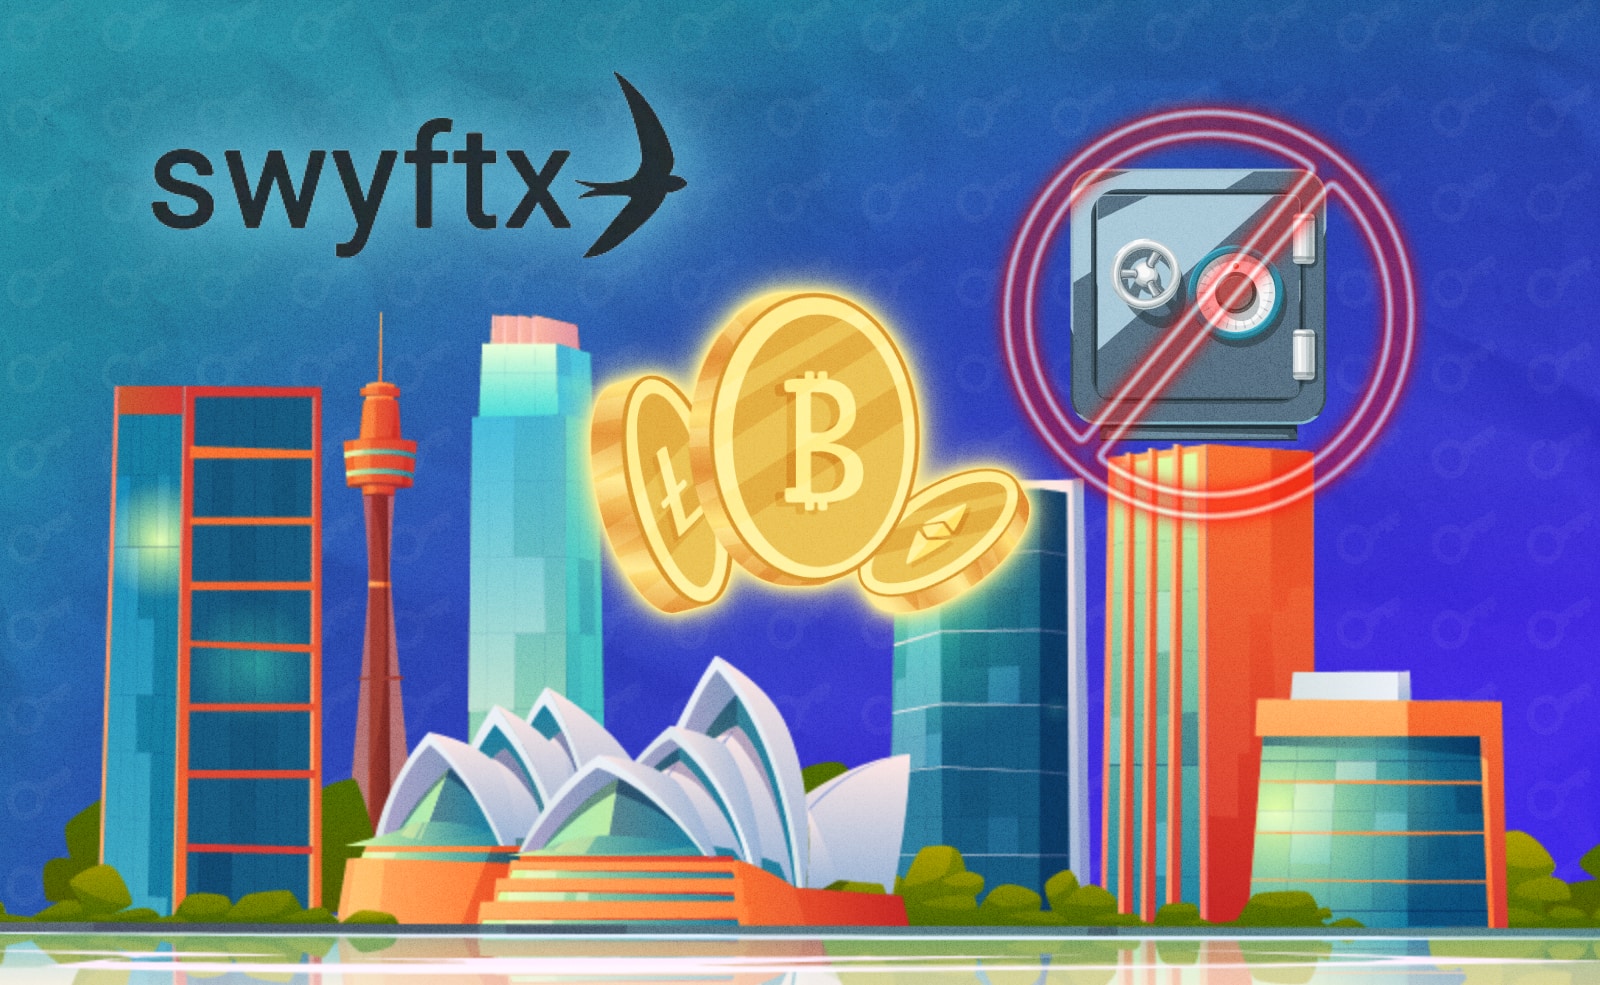 Австралийская криптобиржа Swyftx прекращает выпуск продукта Earn, по которому клиенты зарабатывали проценты за предоставление своих монет. Причиной стало «постоянно меняющееся нормативно-правовое поле» в стране.